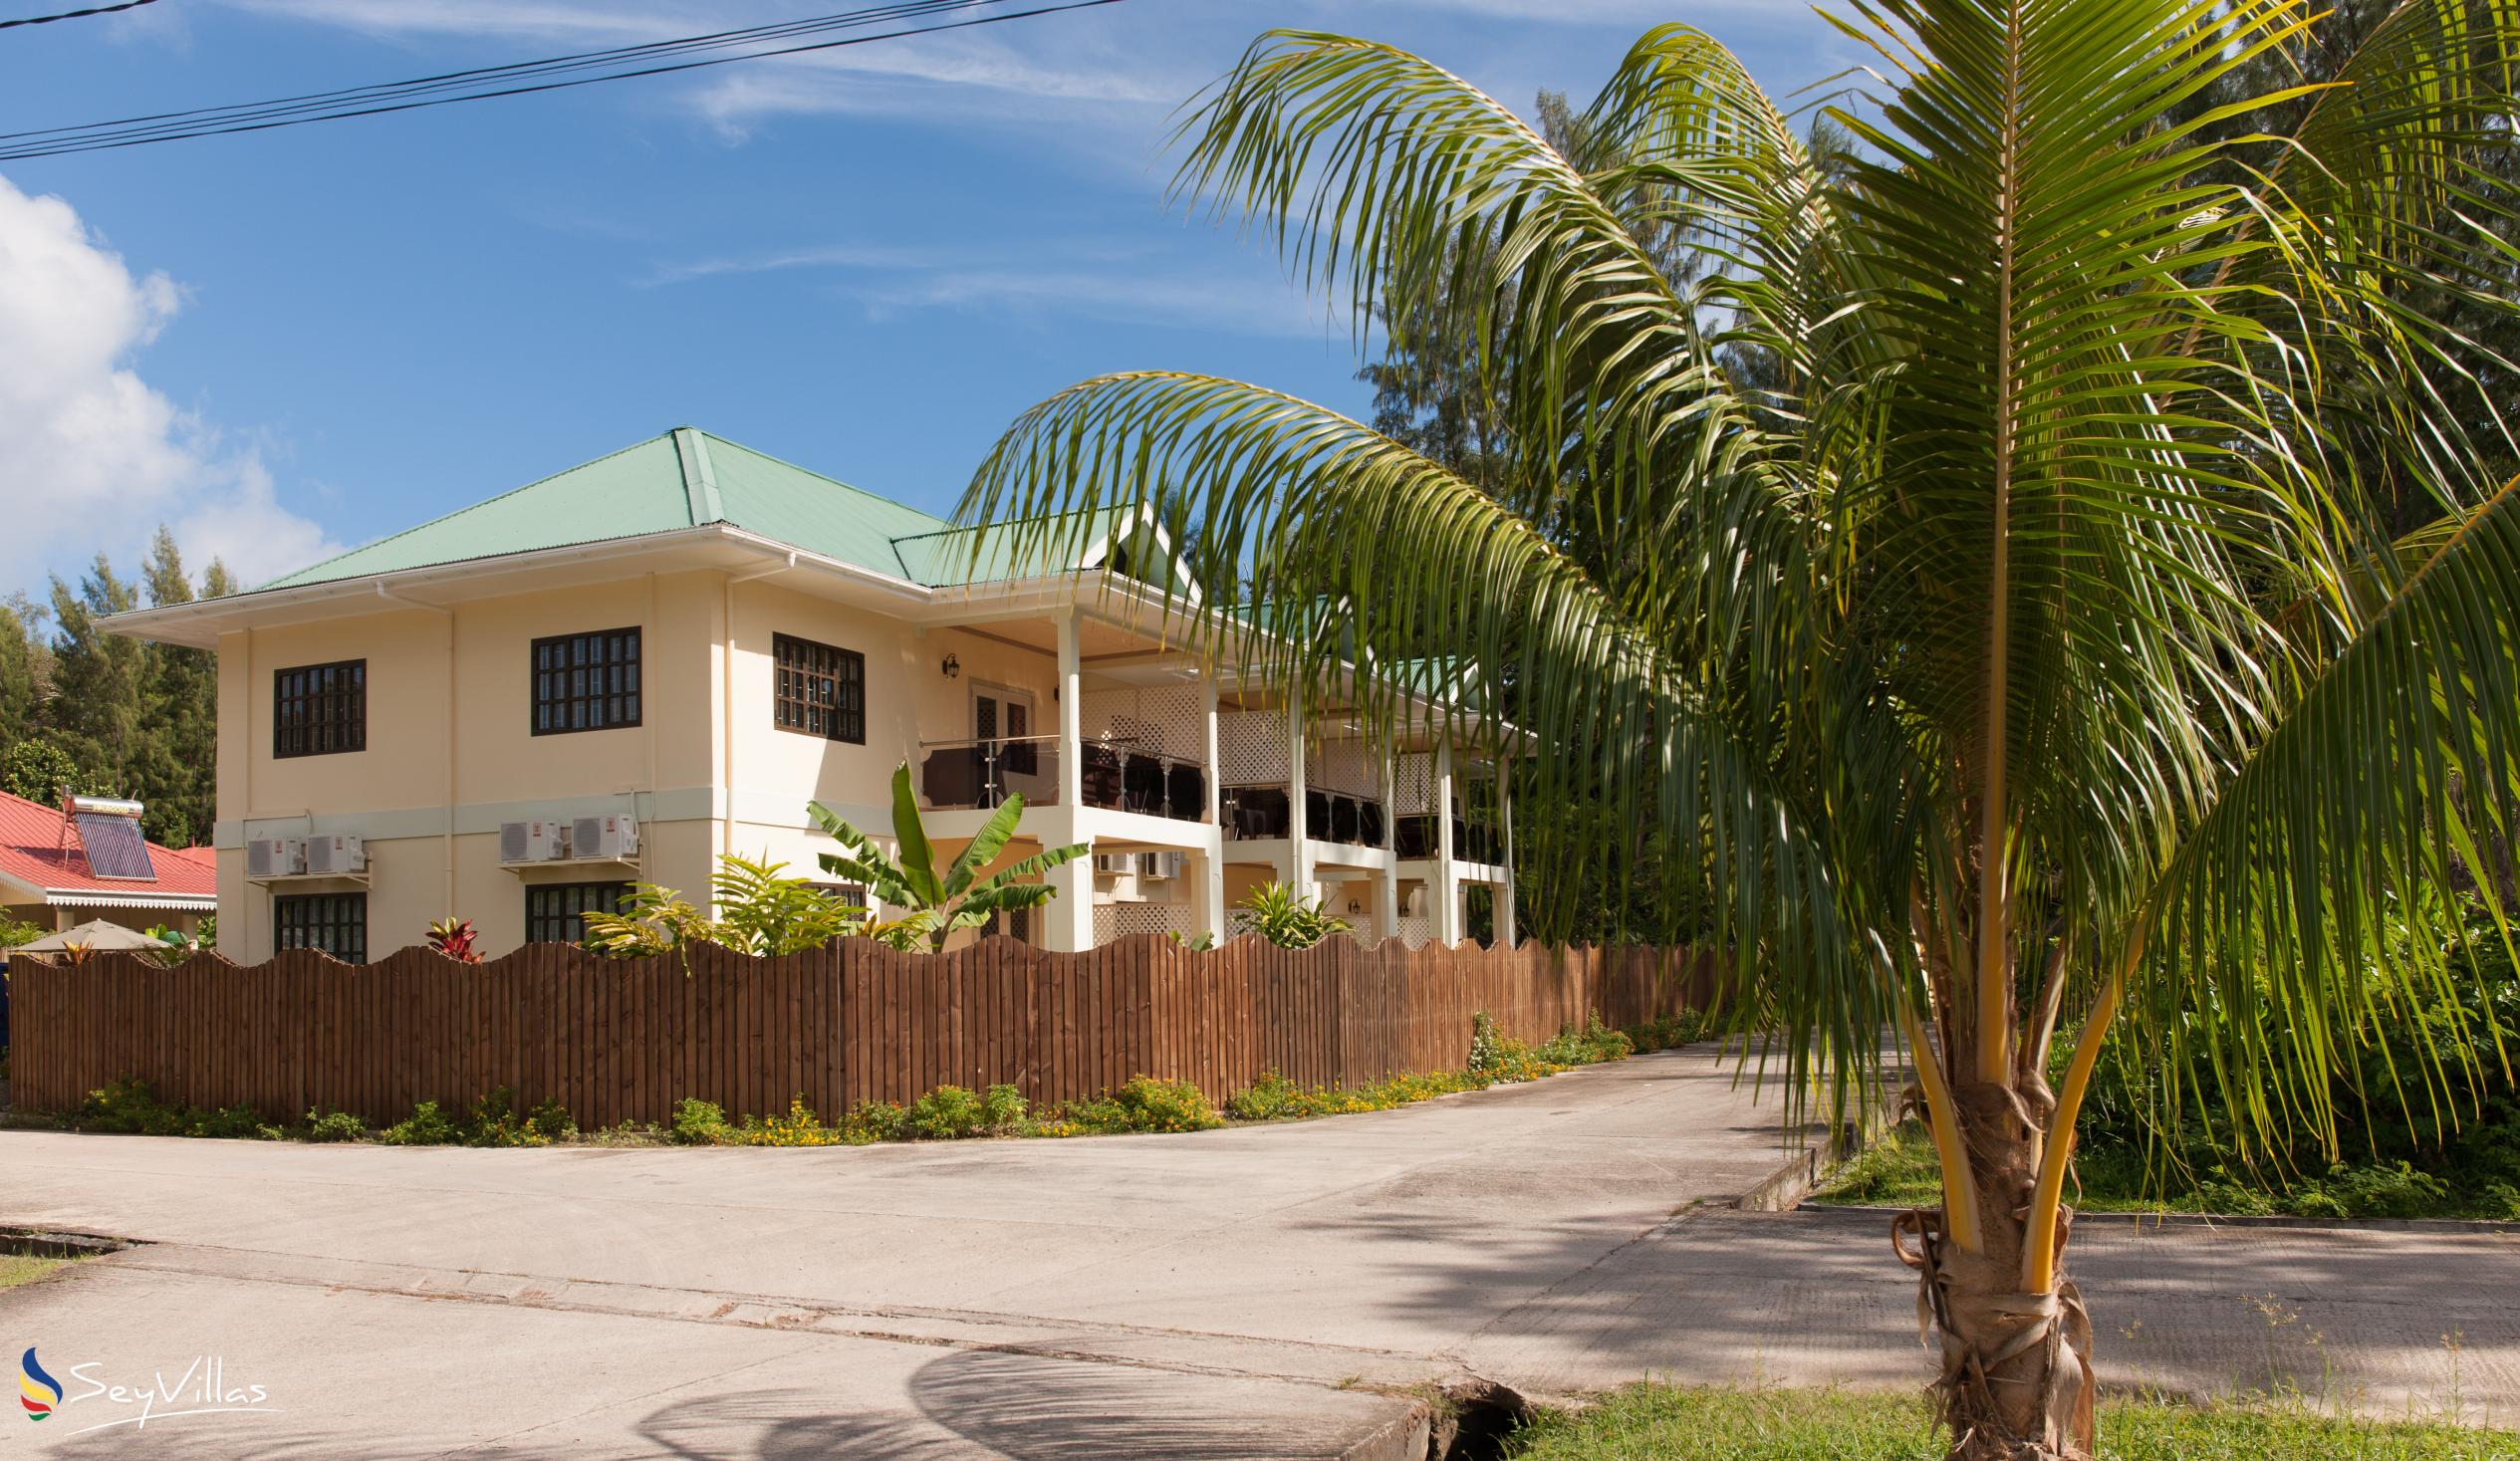 Foto 58: Chez Bea Villa - Posizione - Praslin (Seychelles)